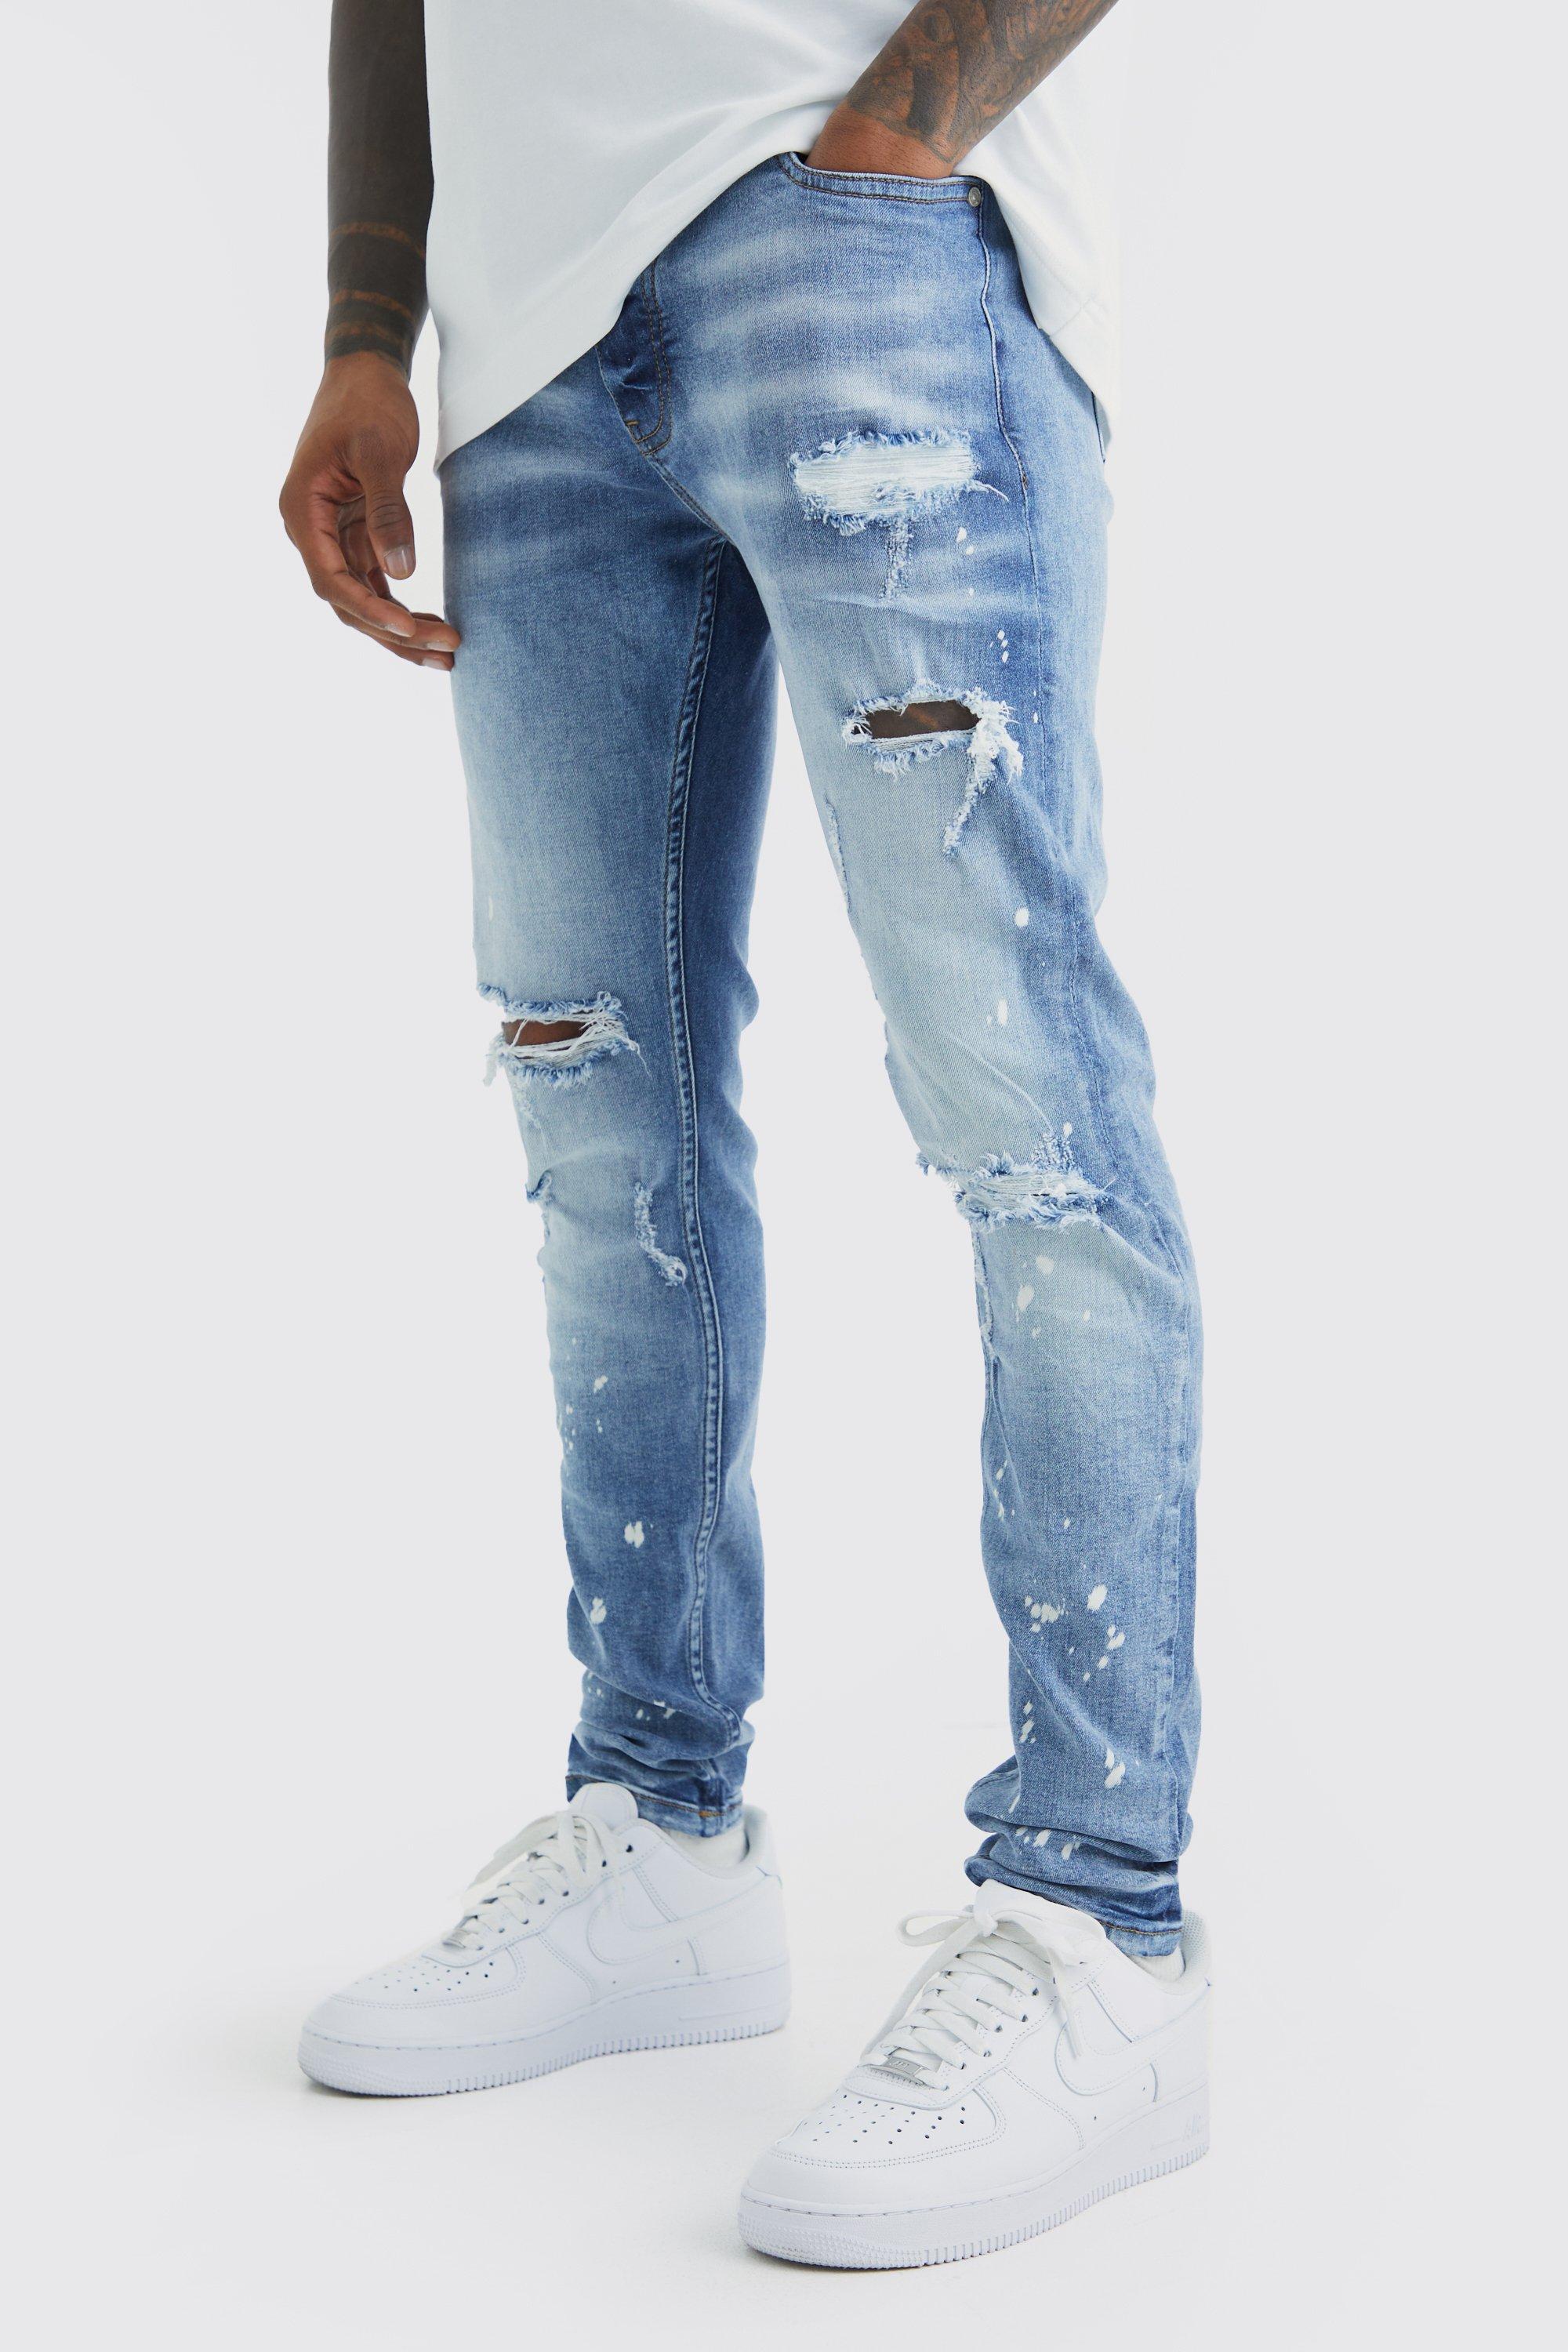 Image of Jeans Skinny Fit Stretch candeggiati con strappi sul ginocchio, Azzurro